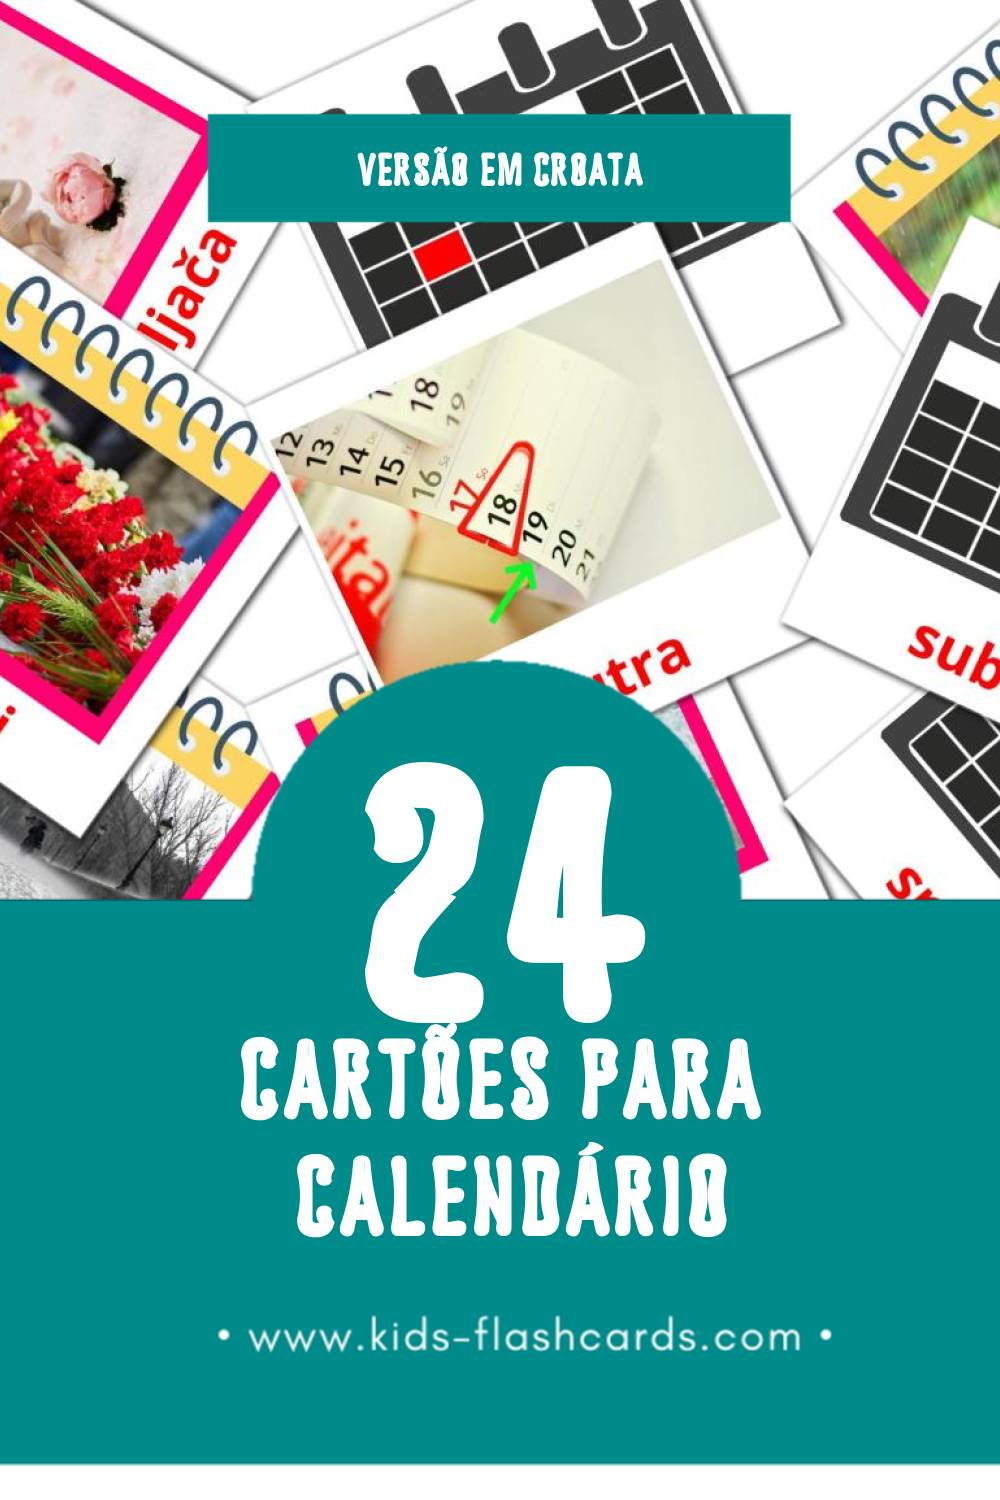 Flashcards de kalendar Visuais para Toddlers (24 cartões em Croata)